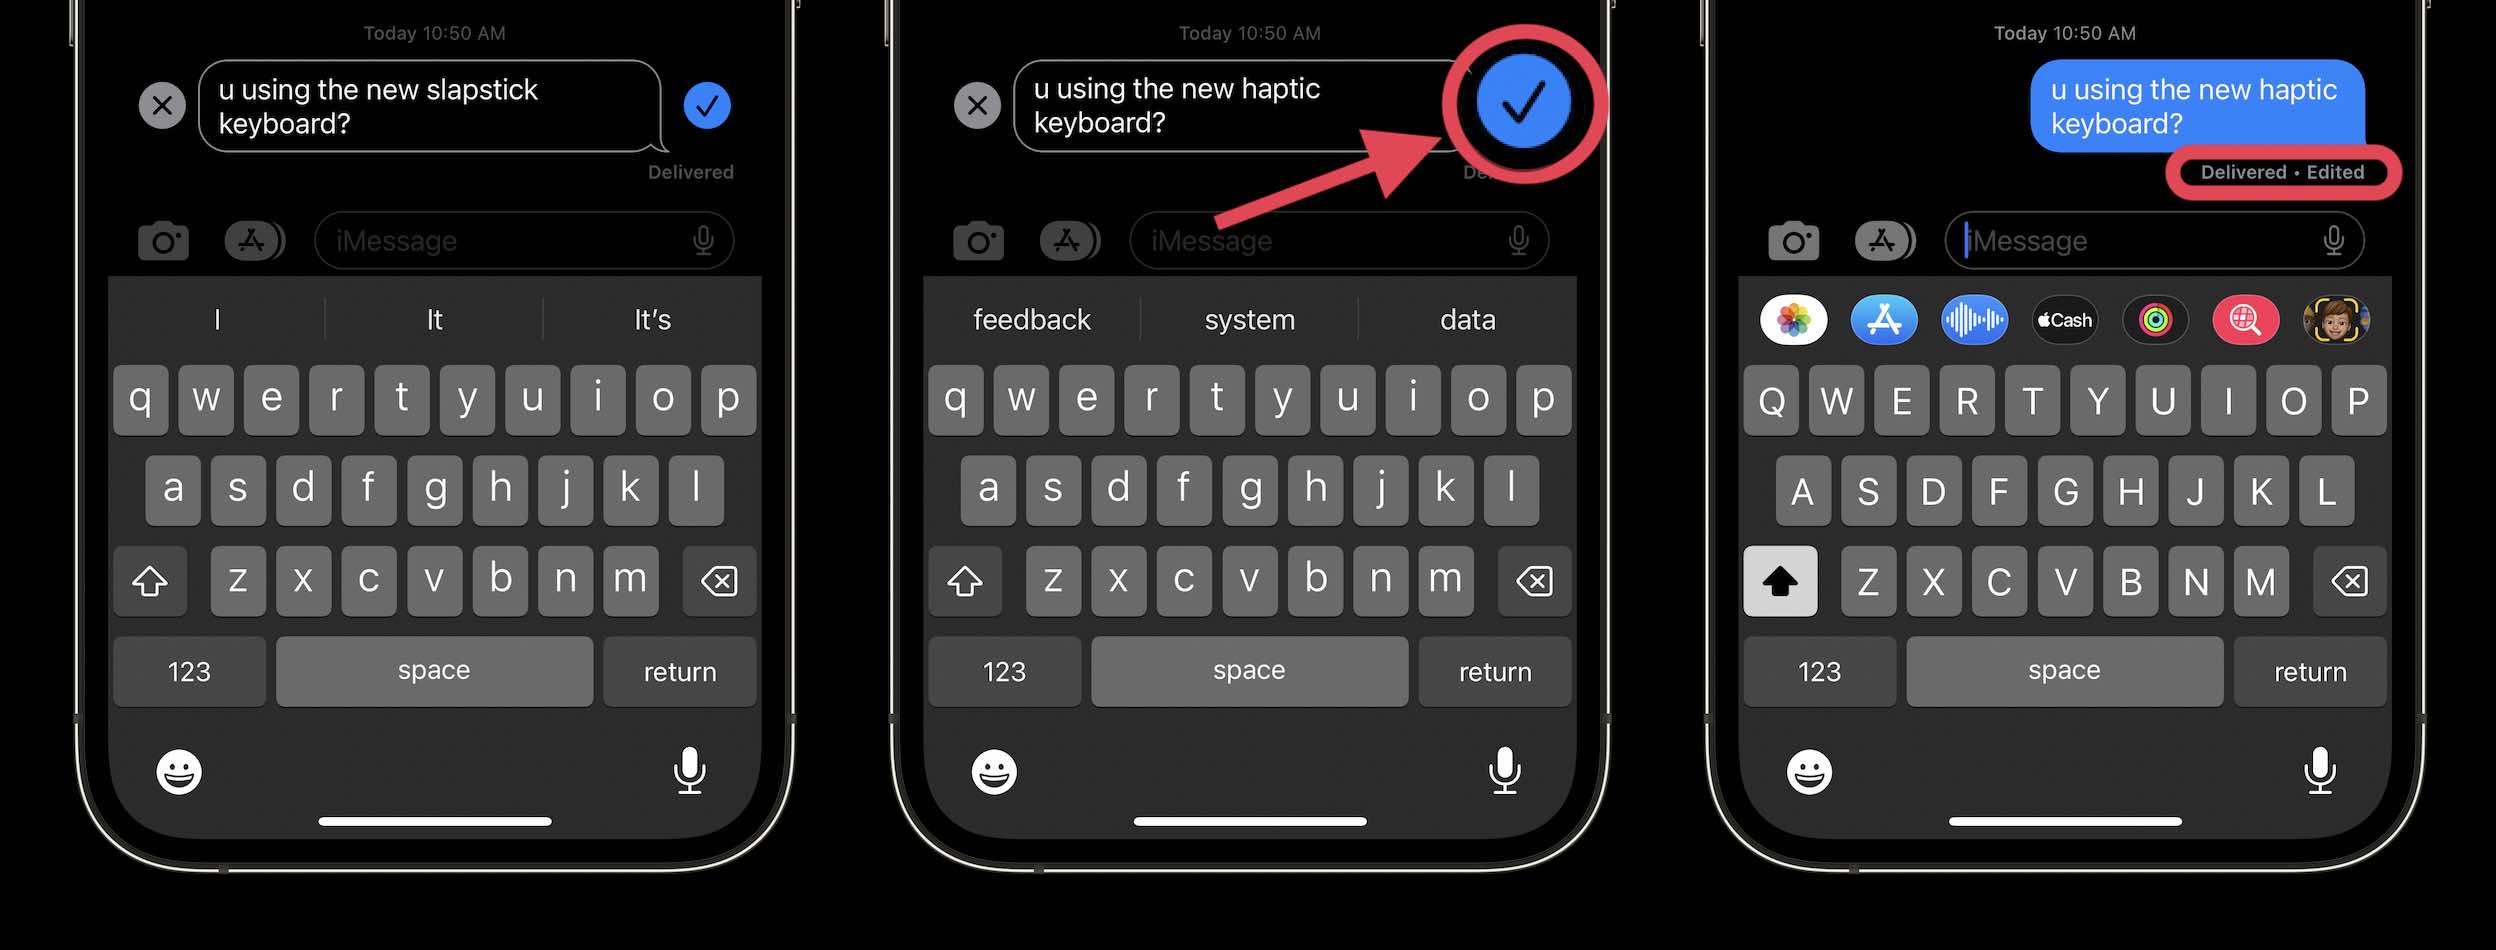 Chỉnh sửa tin nhắn iMessage trên iPhone giờ đây đã dễ dàng hơn bao giờ hết với tính năng chỉnh sửa văn bản và thêm hình ảnh. Bạn có thể chuyển đổi văn bản từ tối sang sáng, thêm màu sắc hoặc chèn biểu tượng tùy chỉnh. Nhấp vào hình ảnh để khám phá thêm về tính năng này trên iPhone! 